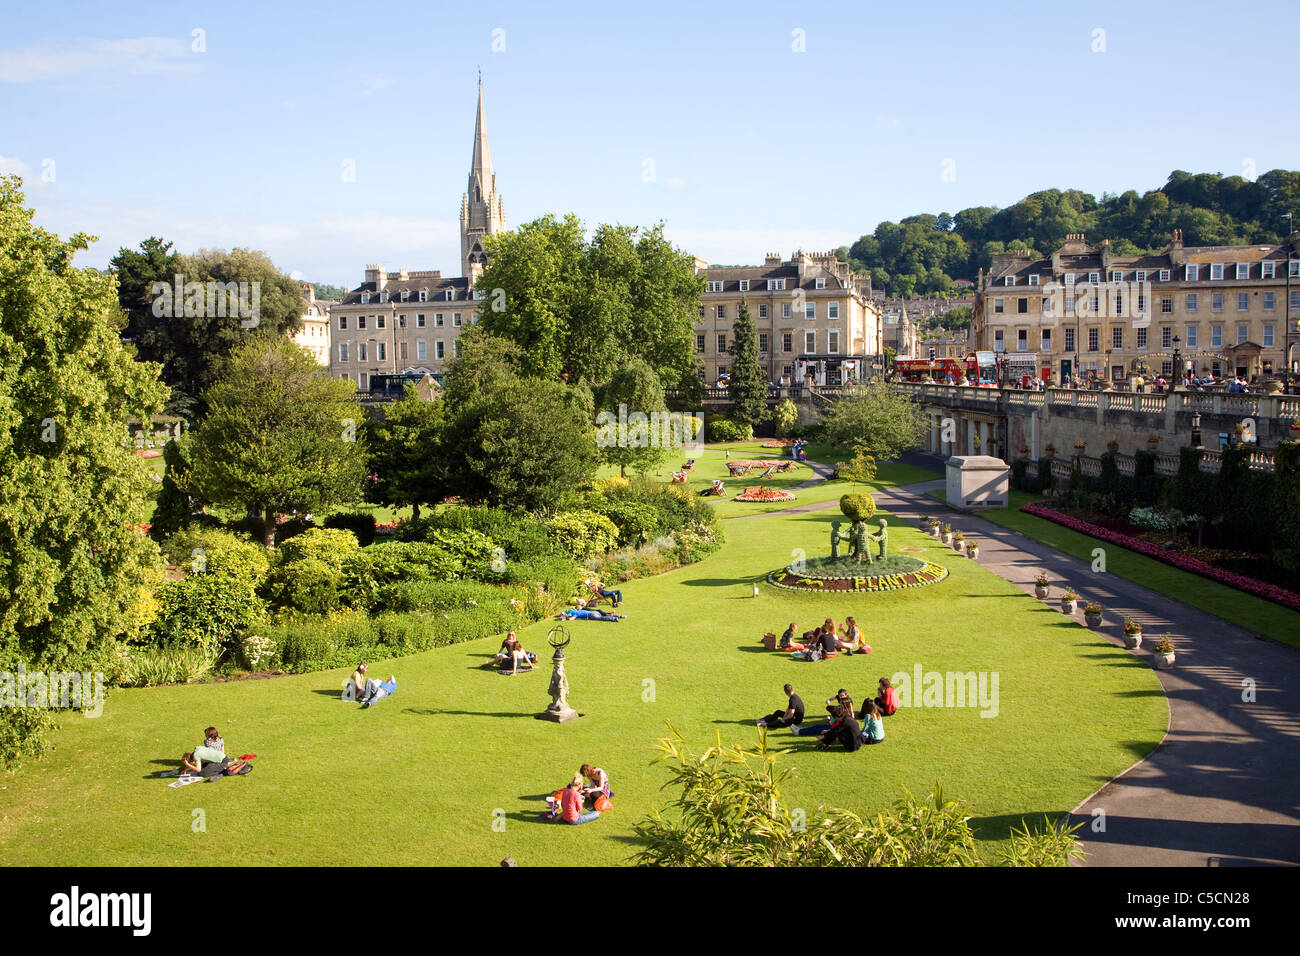 Parade Gardens, Bath, England Stock Photo